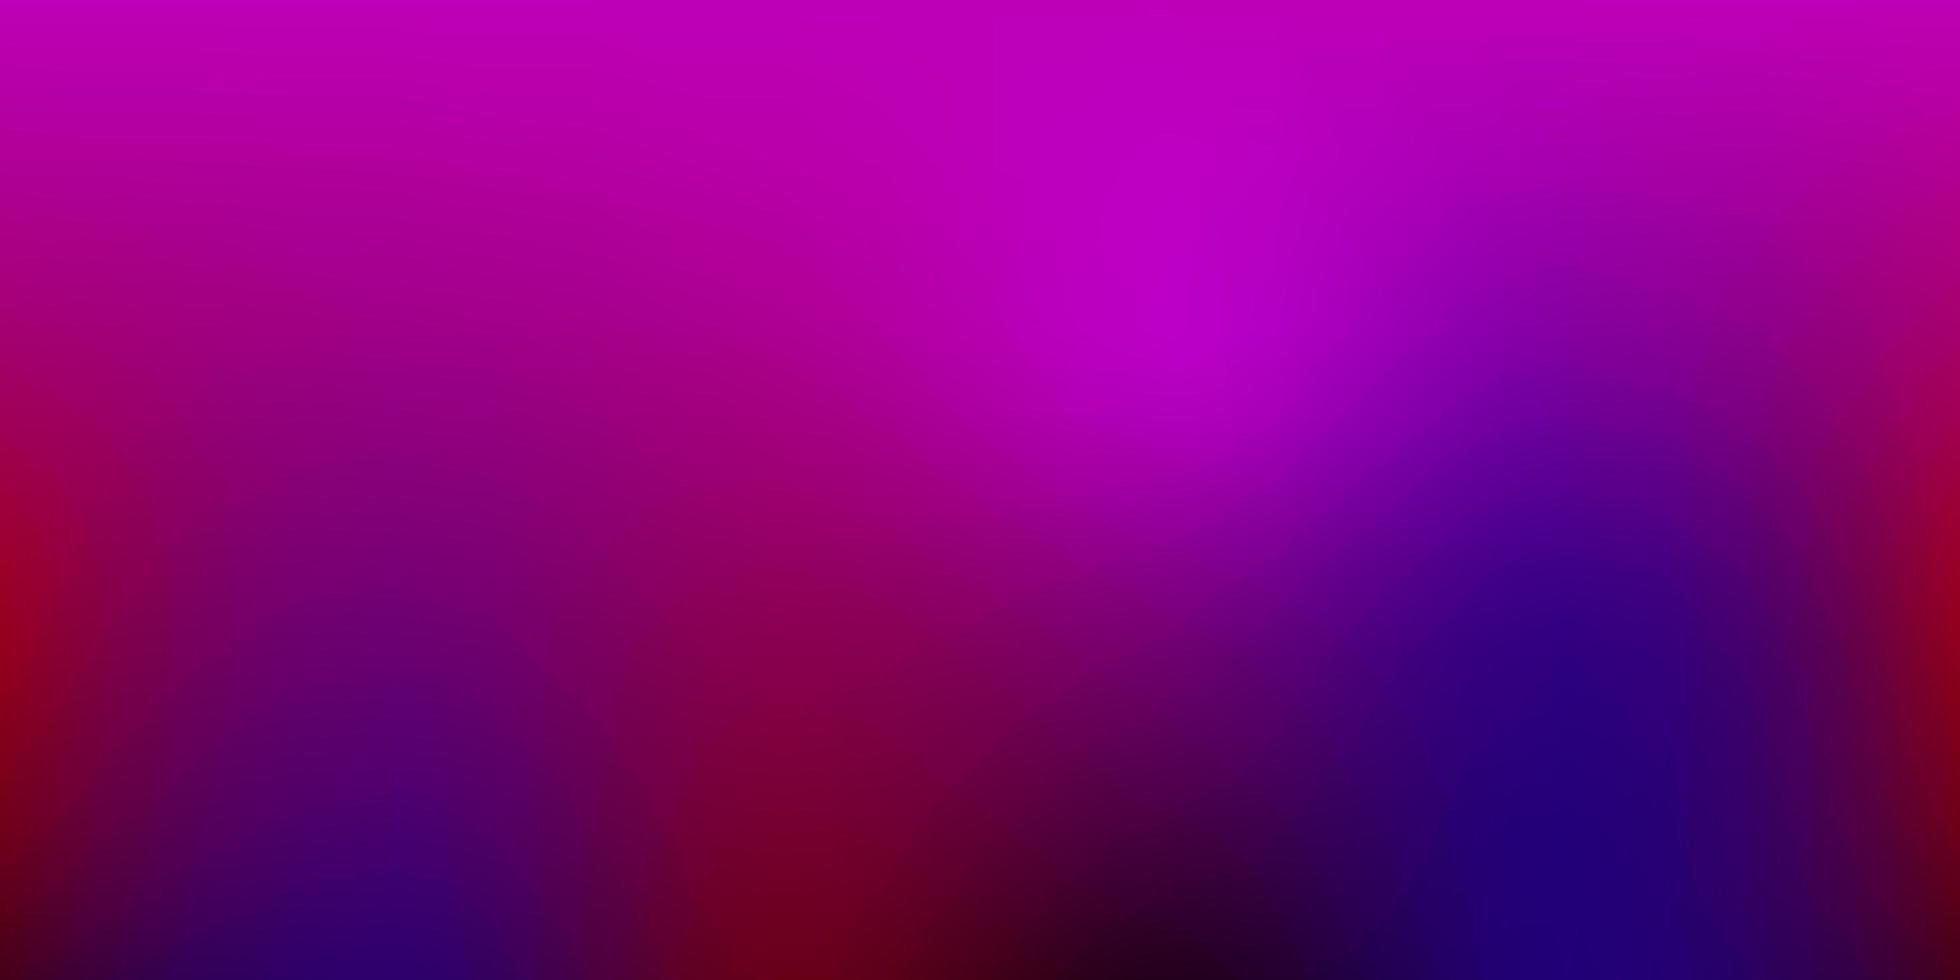 Dark Blue, Red vector blurred texture.